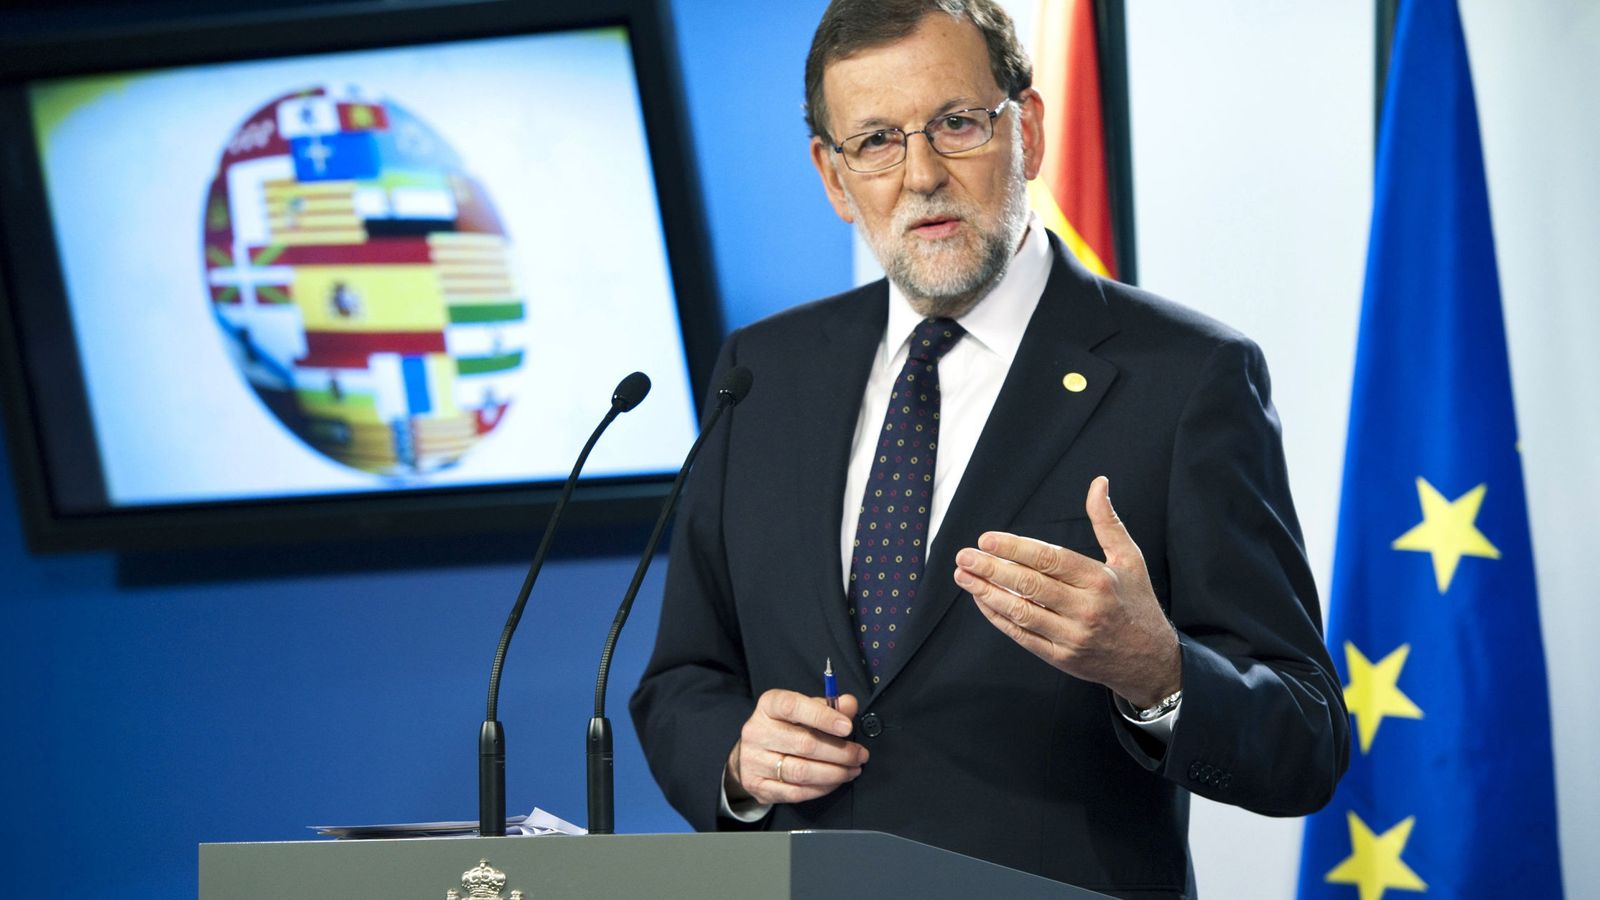 Foto: El presidente del Gobierno español en funciones, Mariano Rajoy. (EFE)